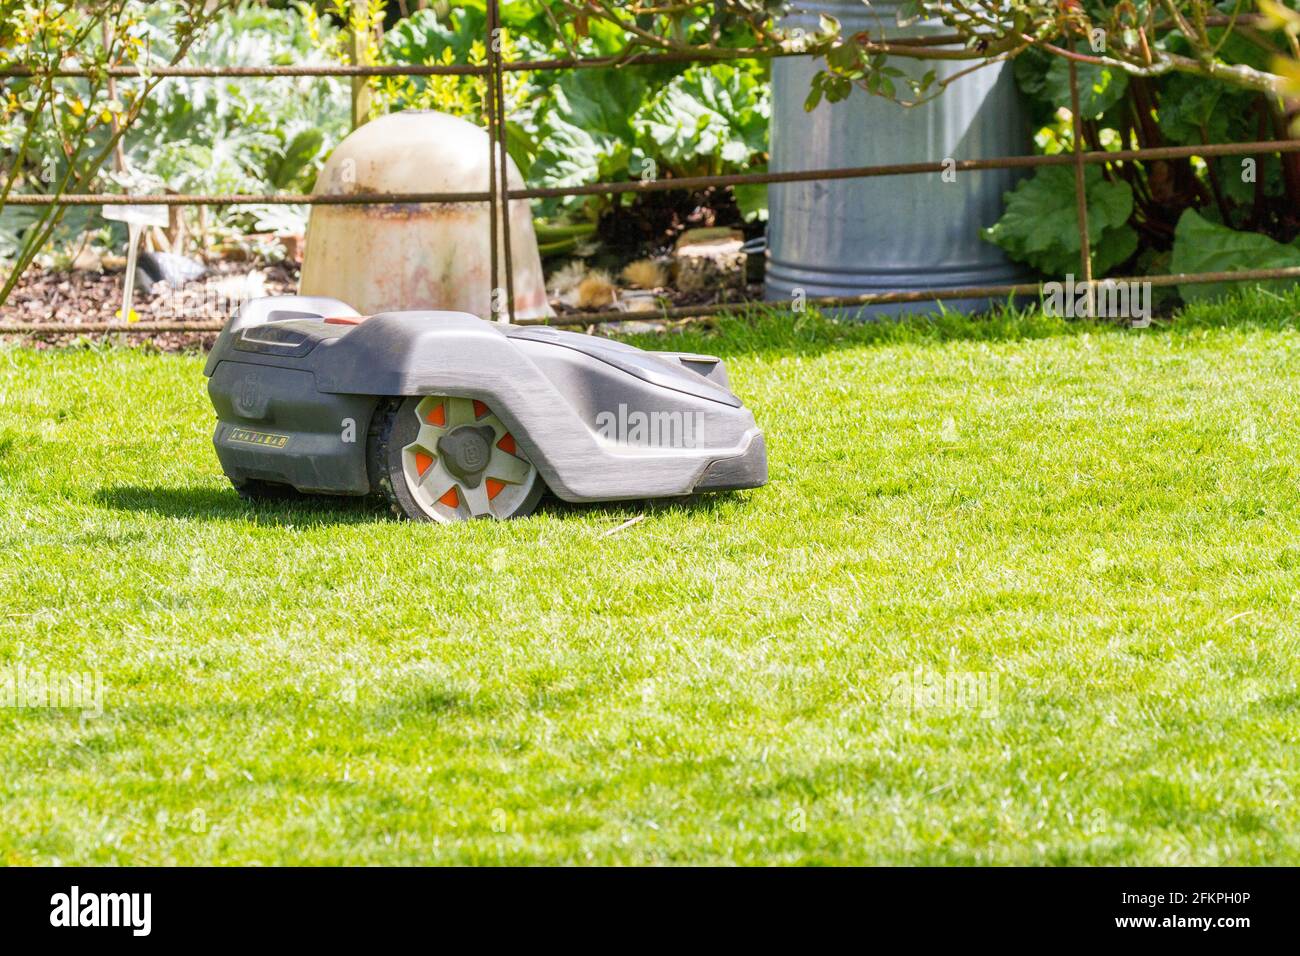 Robot de tonte automatique Husqvarna utilisé dans un Jardin anglais de campagne tonant et coupant une pelouse d'herbe Banque D'Images